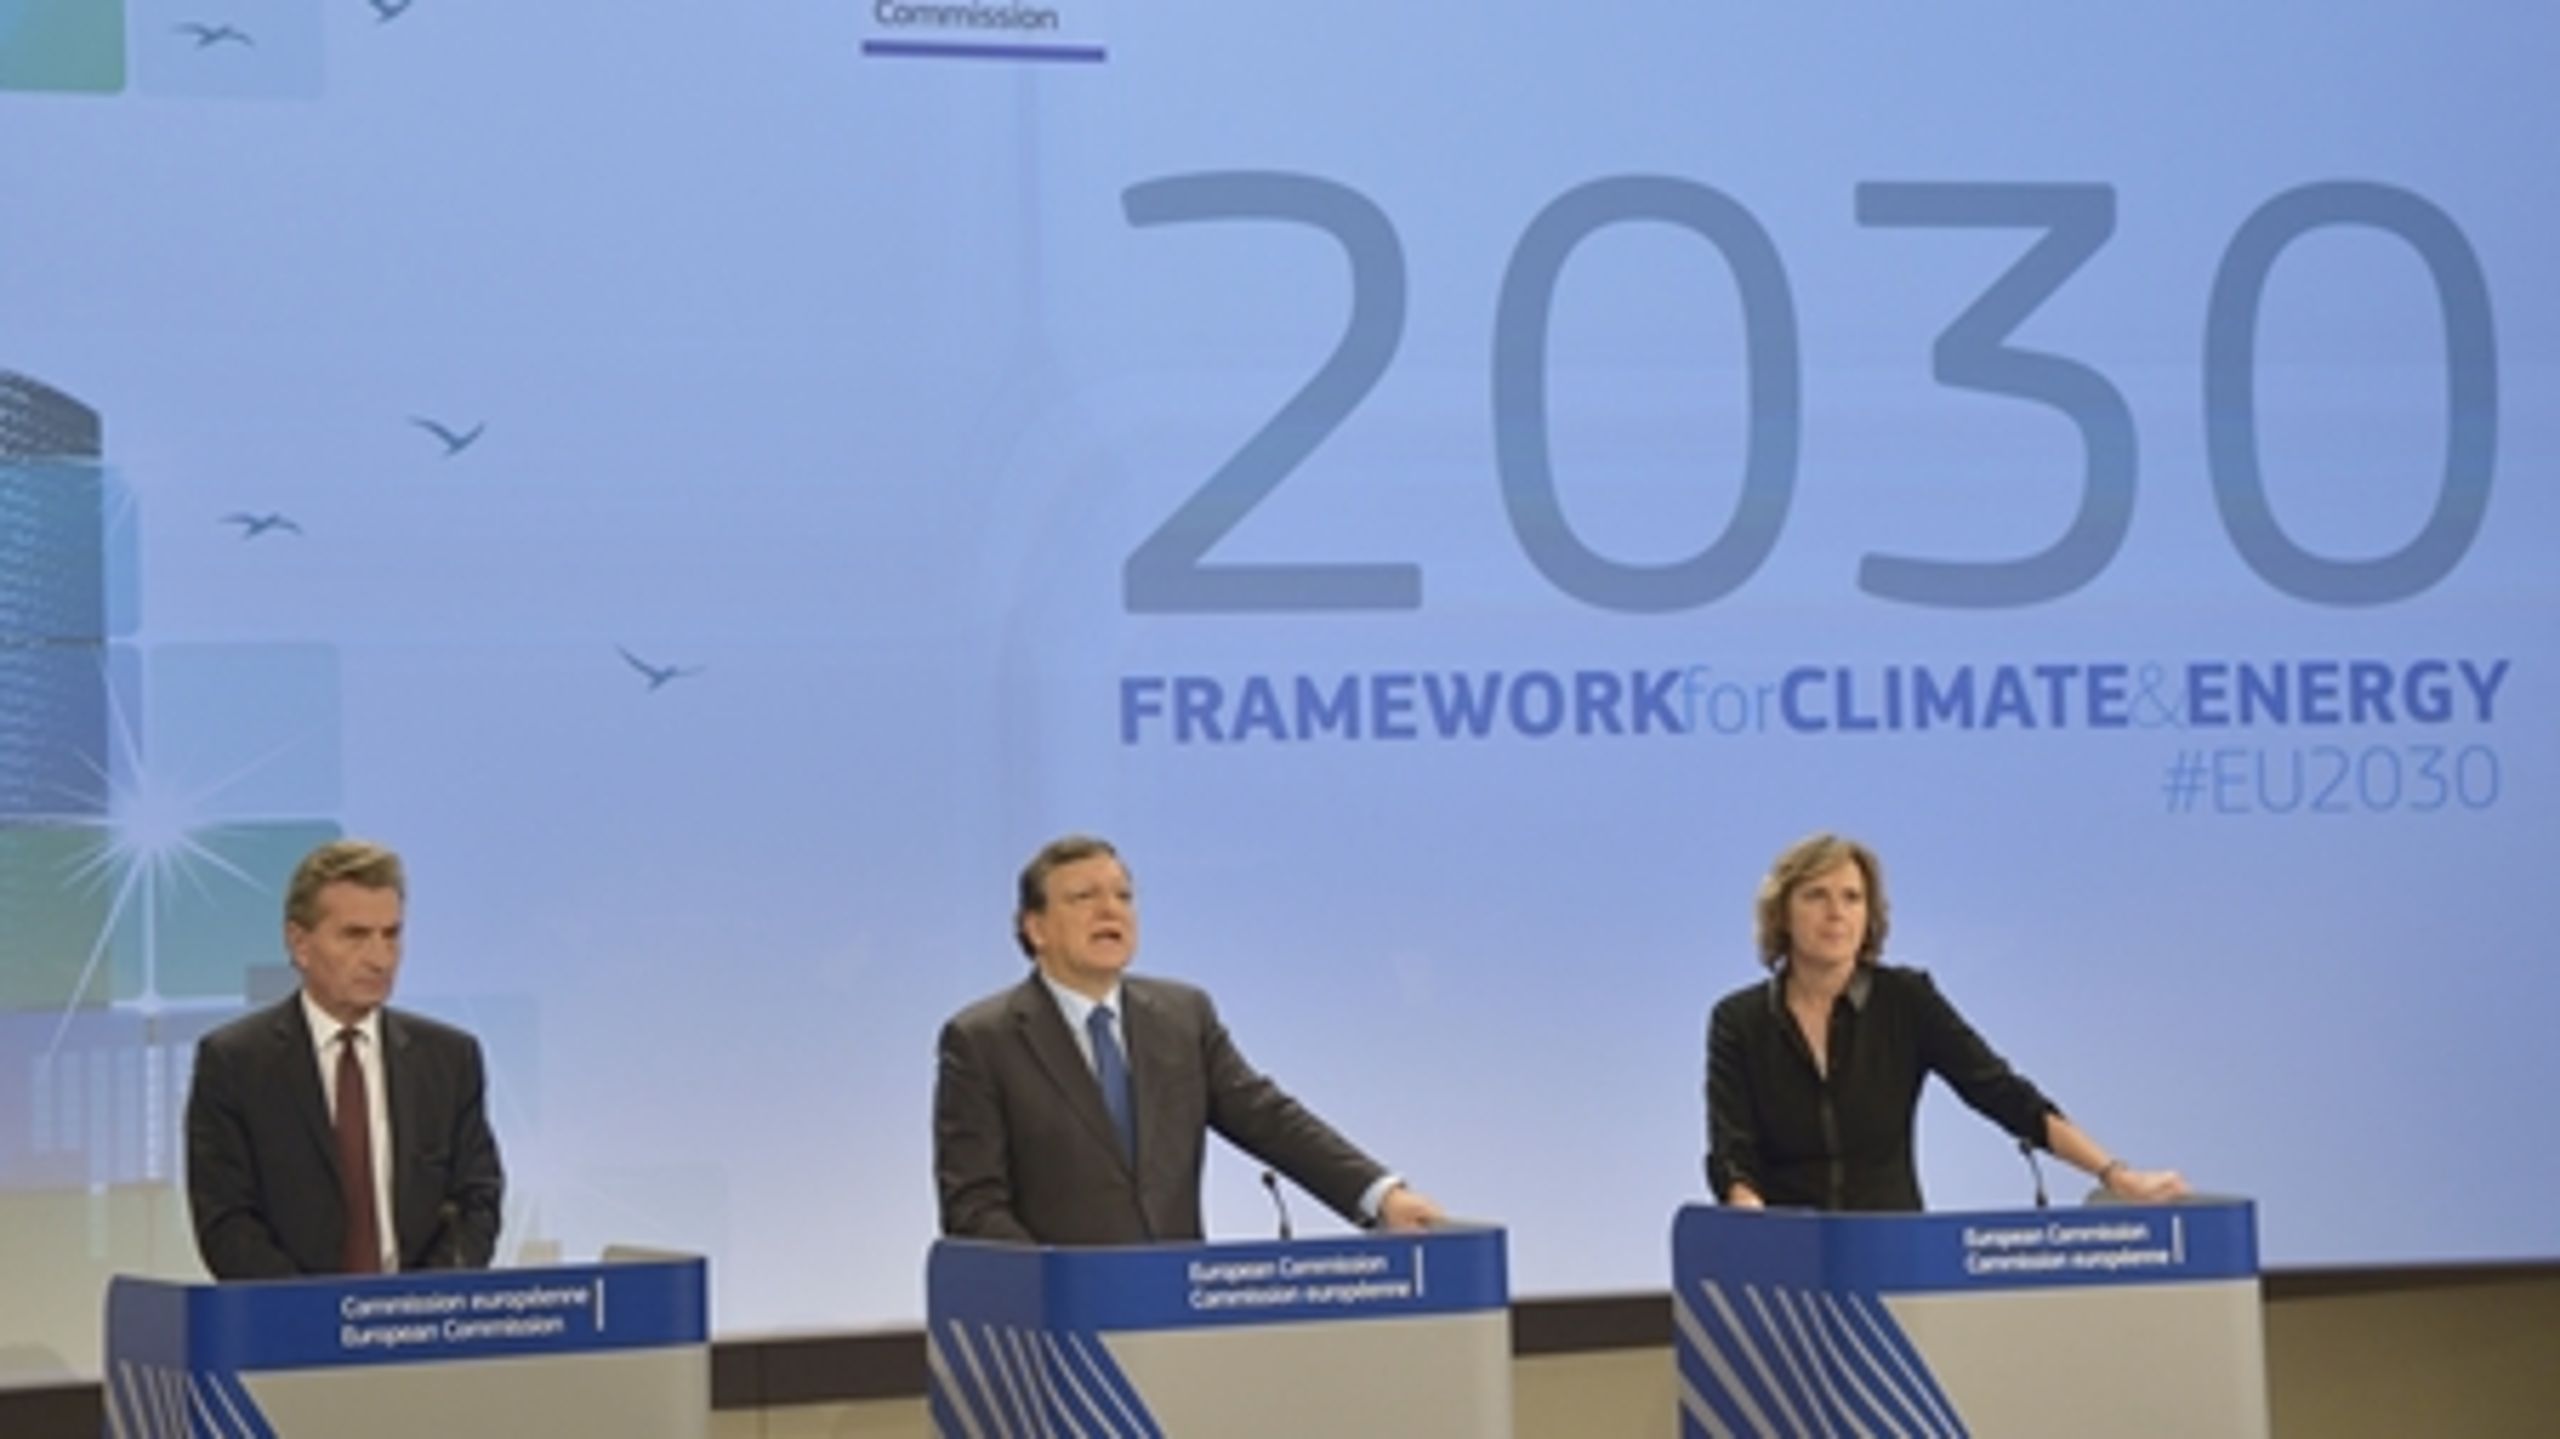 Energikommissær Günther Oettinger, formand for EU-Kommissionen Manuel Barosso og klimakommissær Connie Hedegaard præsenterede onsdag EU-Kommissionens udspil til EU's energi- og klimapolitik for 2030.